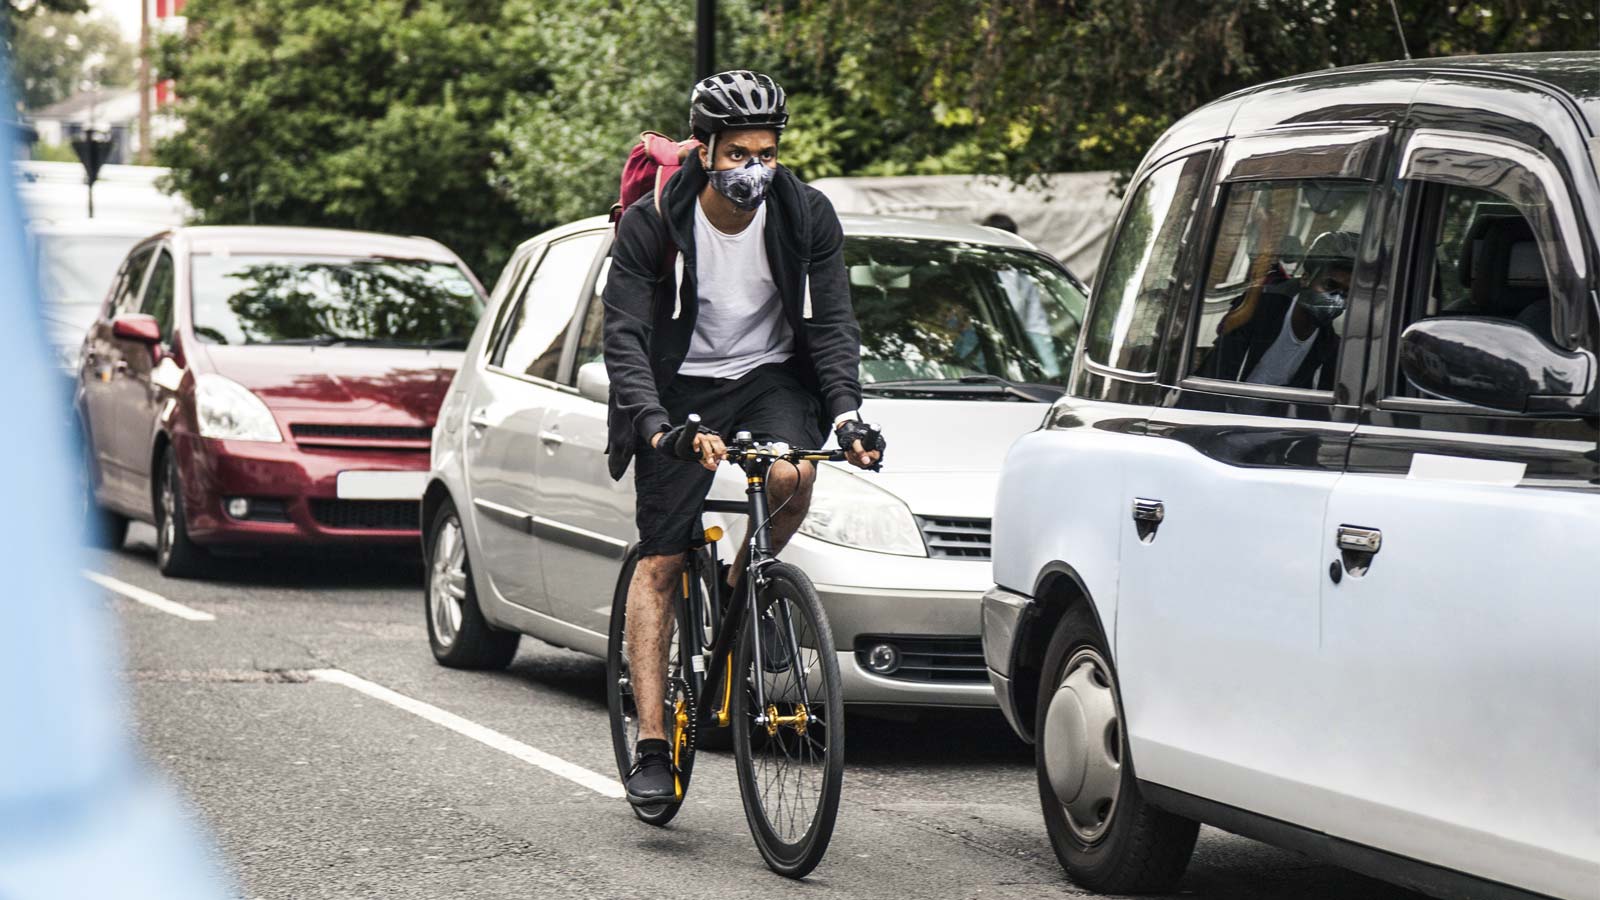 Radfahrer, der sich mit einer Atemmaske zu schützen versucht. Foto: LeoPatrizi / iStock.com